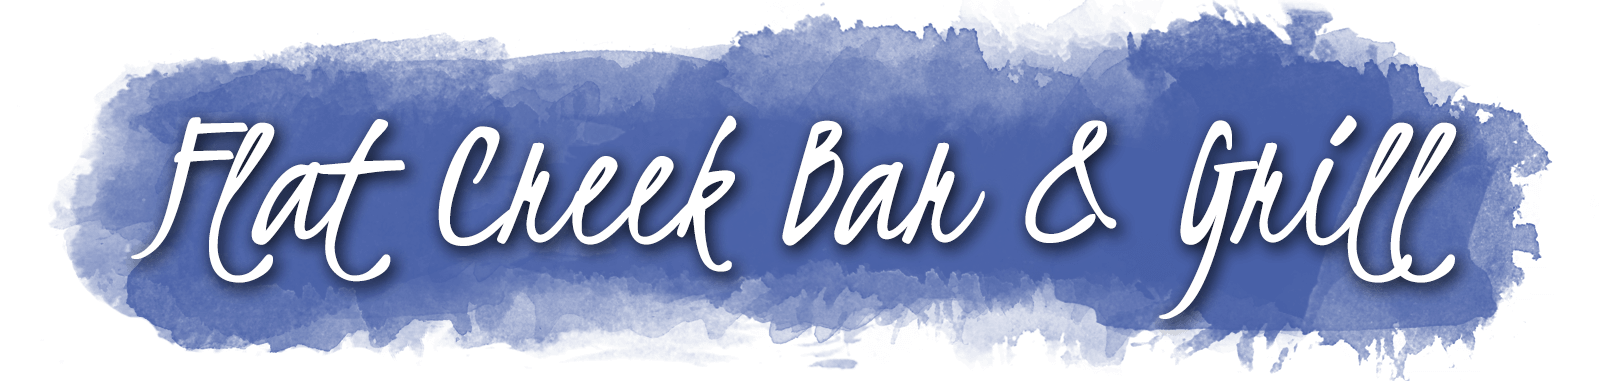 Flat Creek Bar & Grill